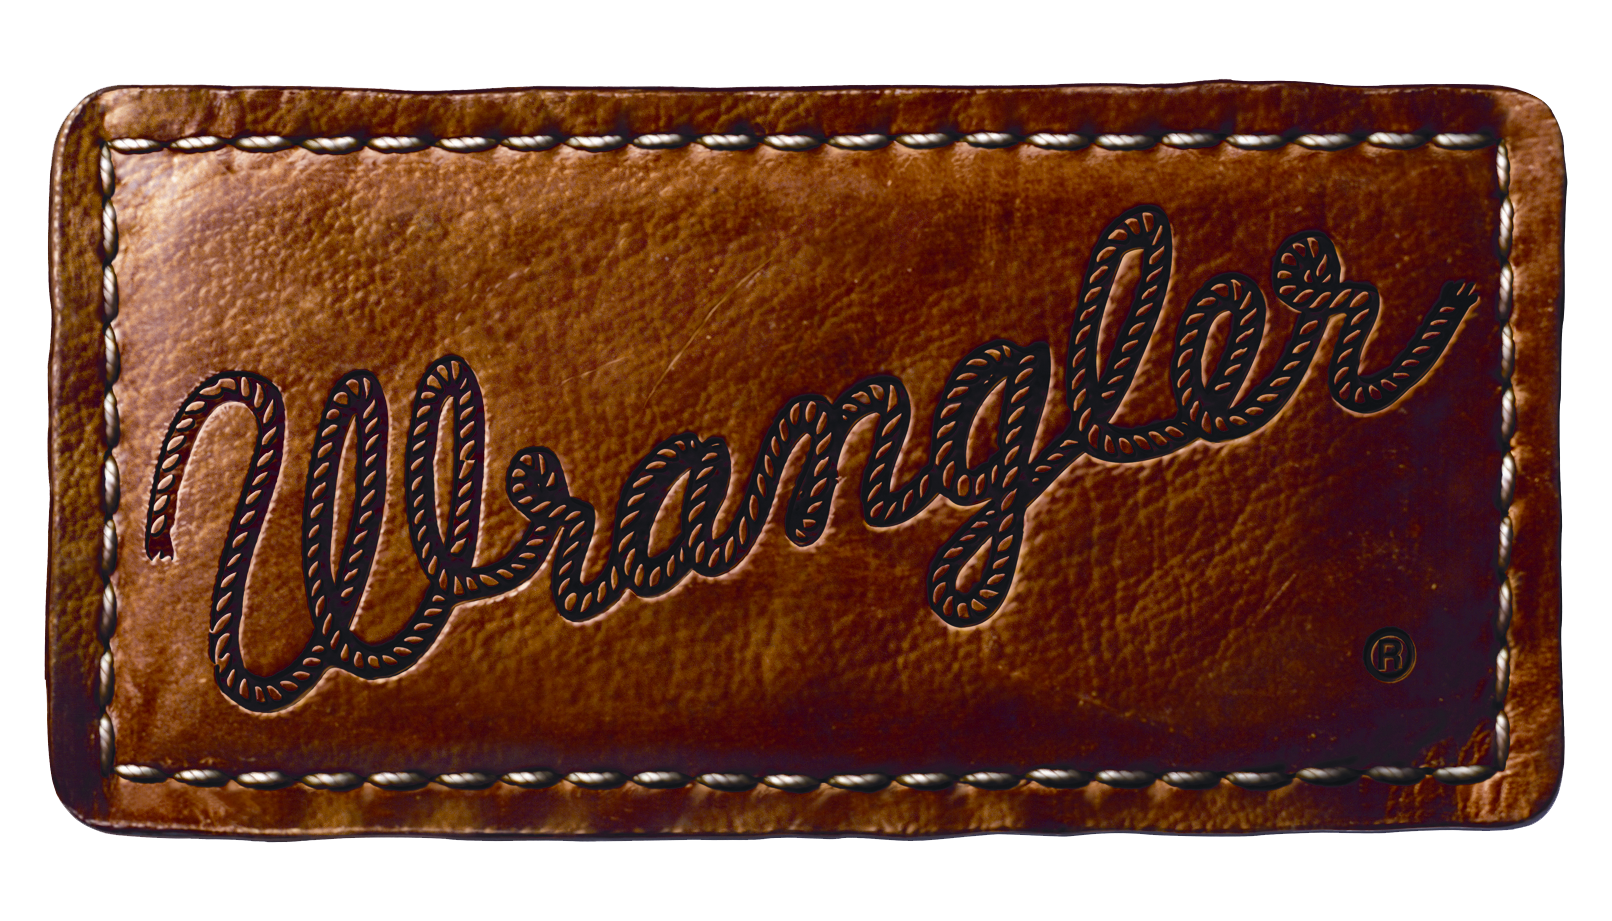  Wrangler  jeans  Logos 